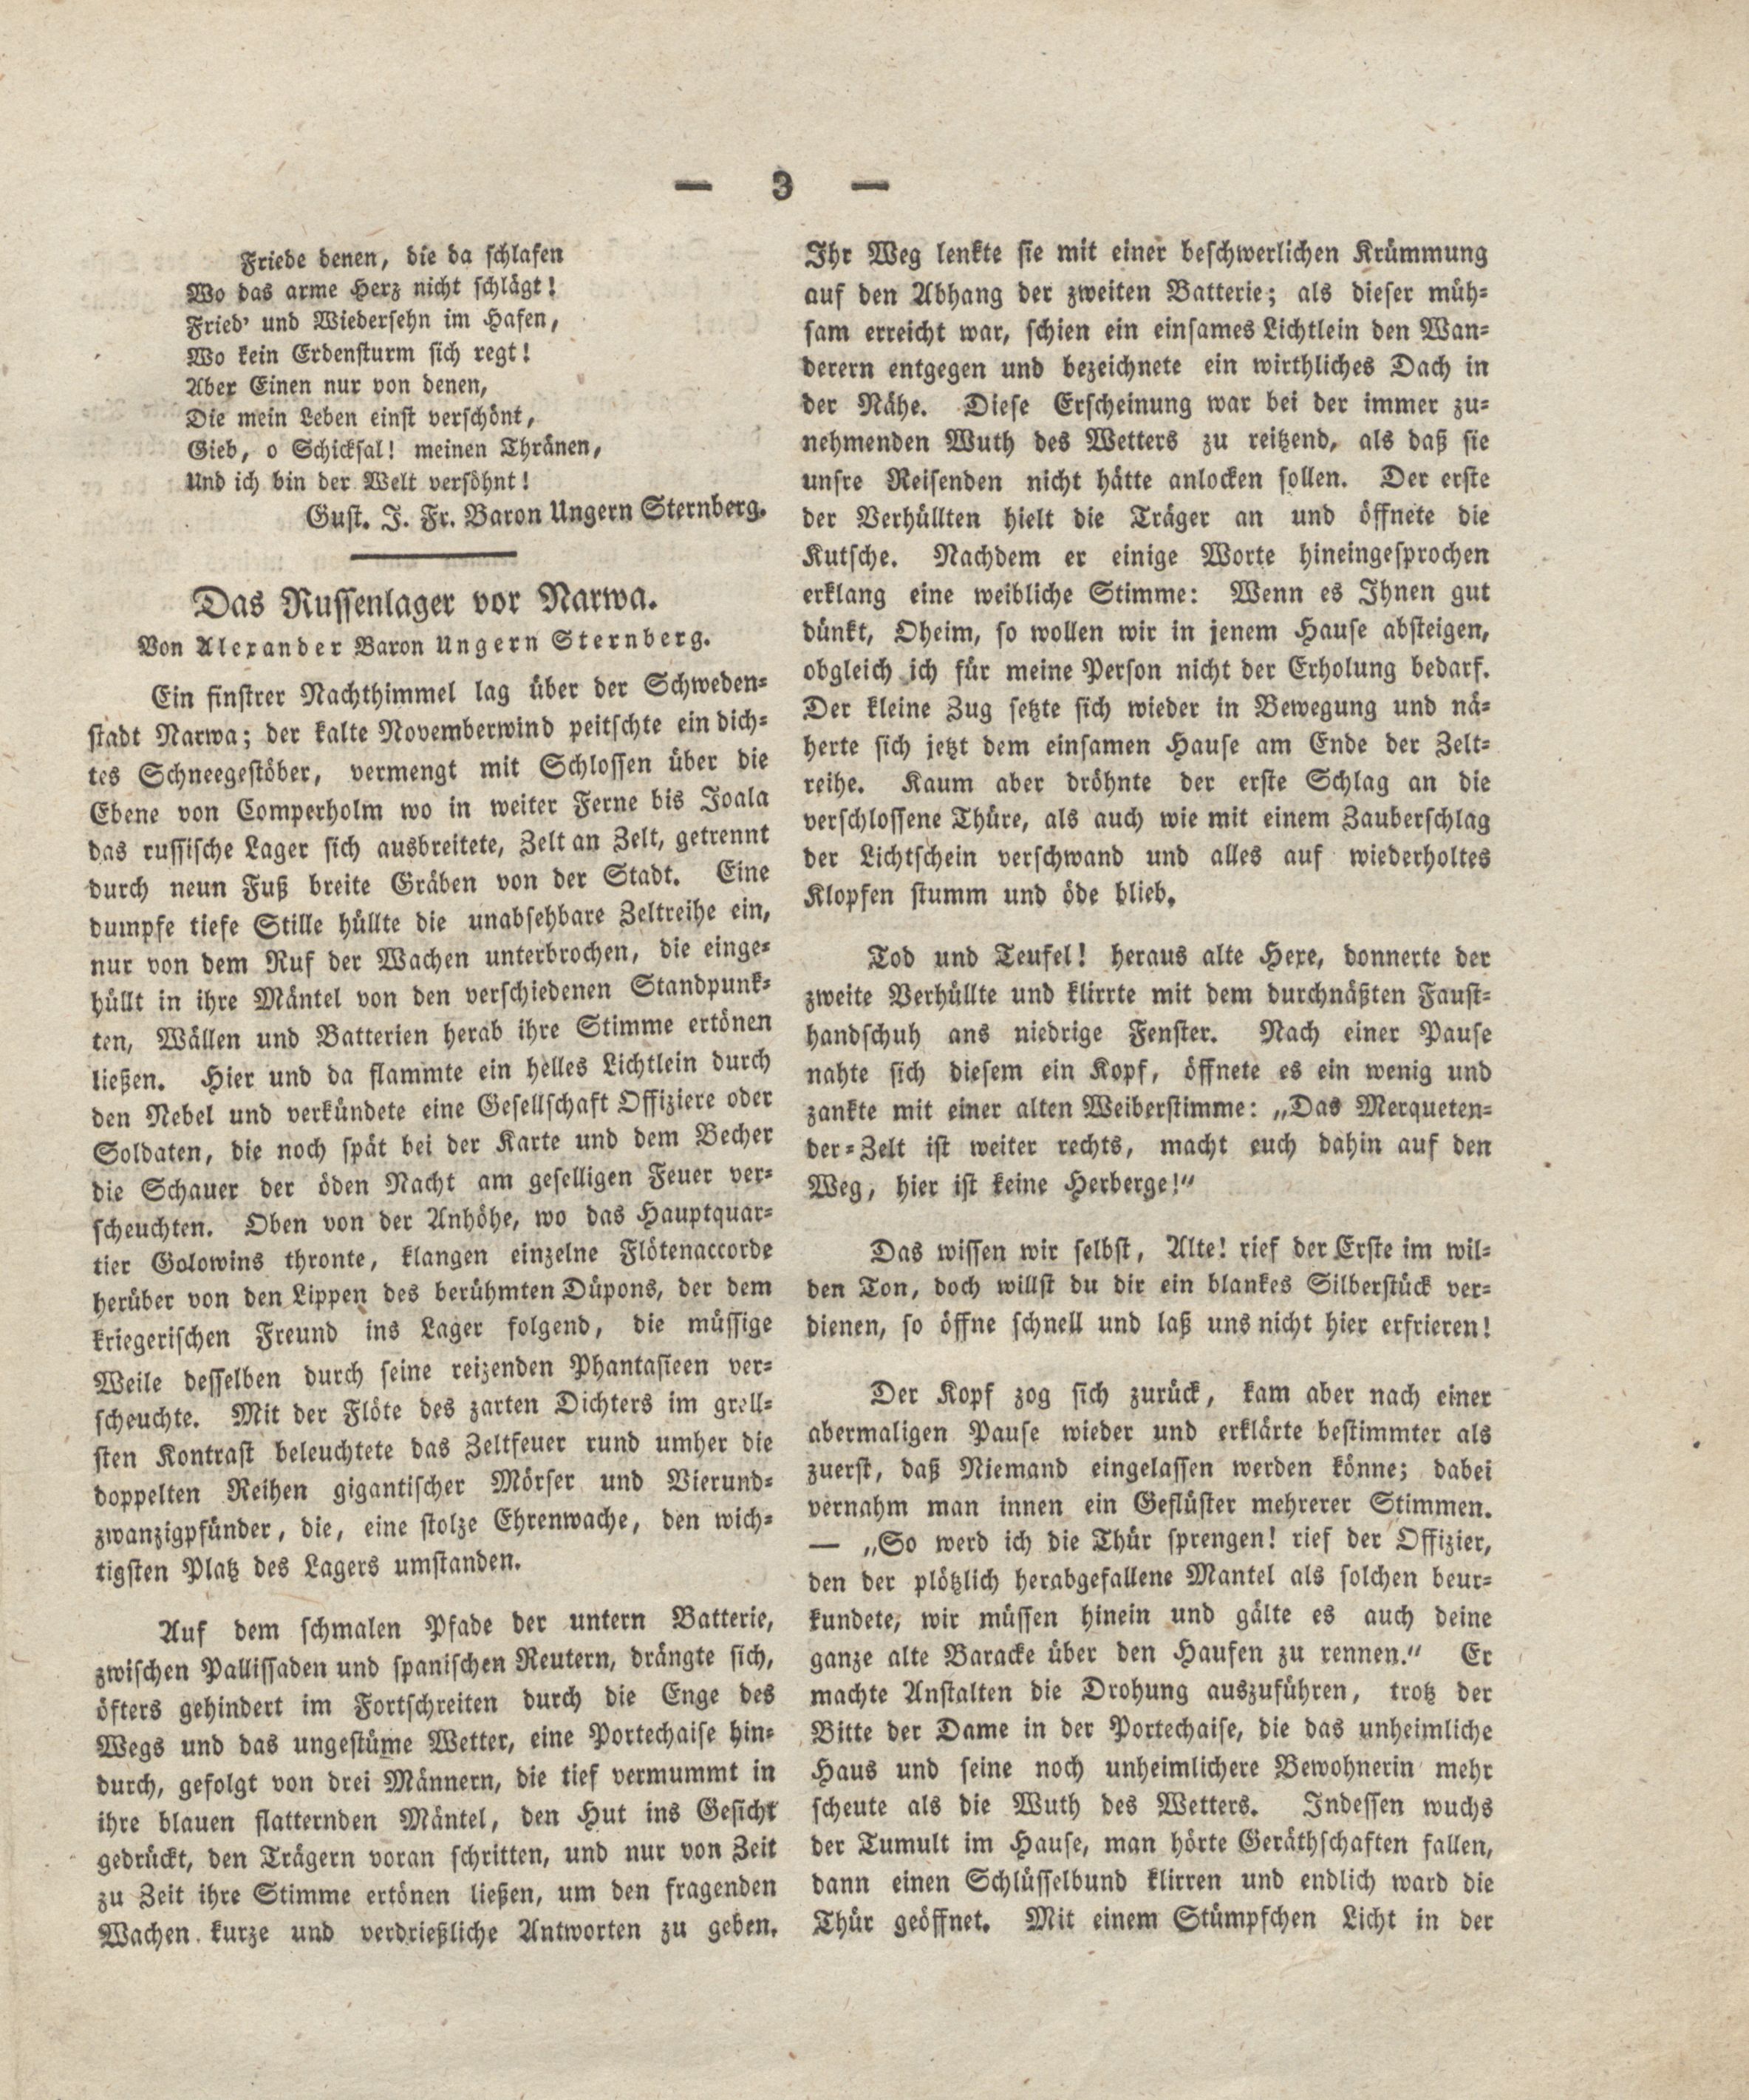 Empfindungen in den Ruinen zu Fegfeuer (1828) | 2. (3) Main body of text